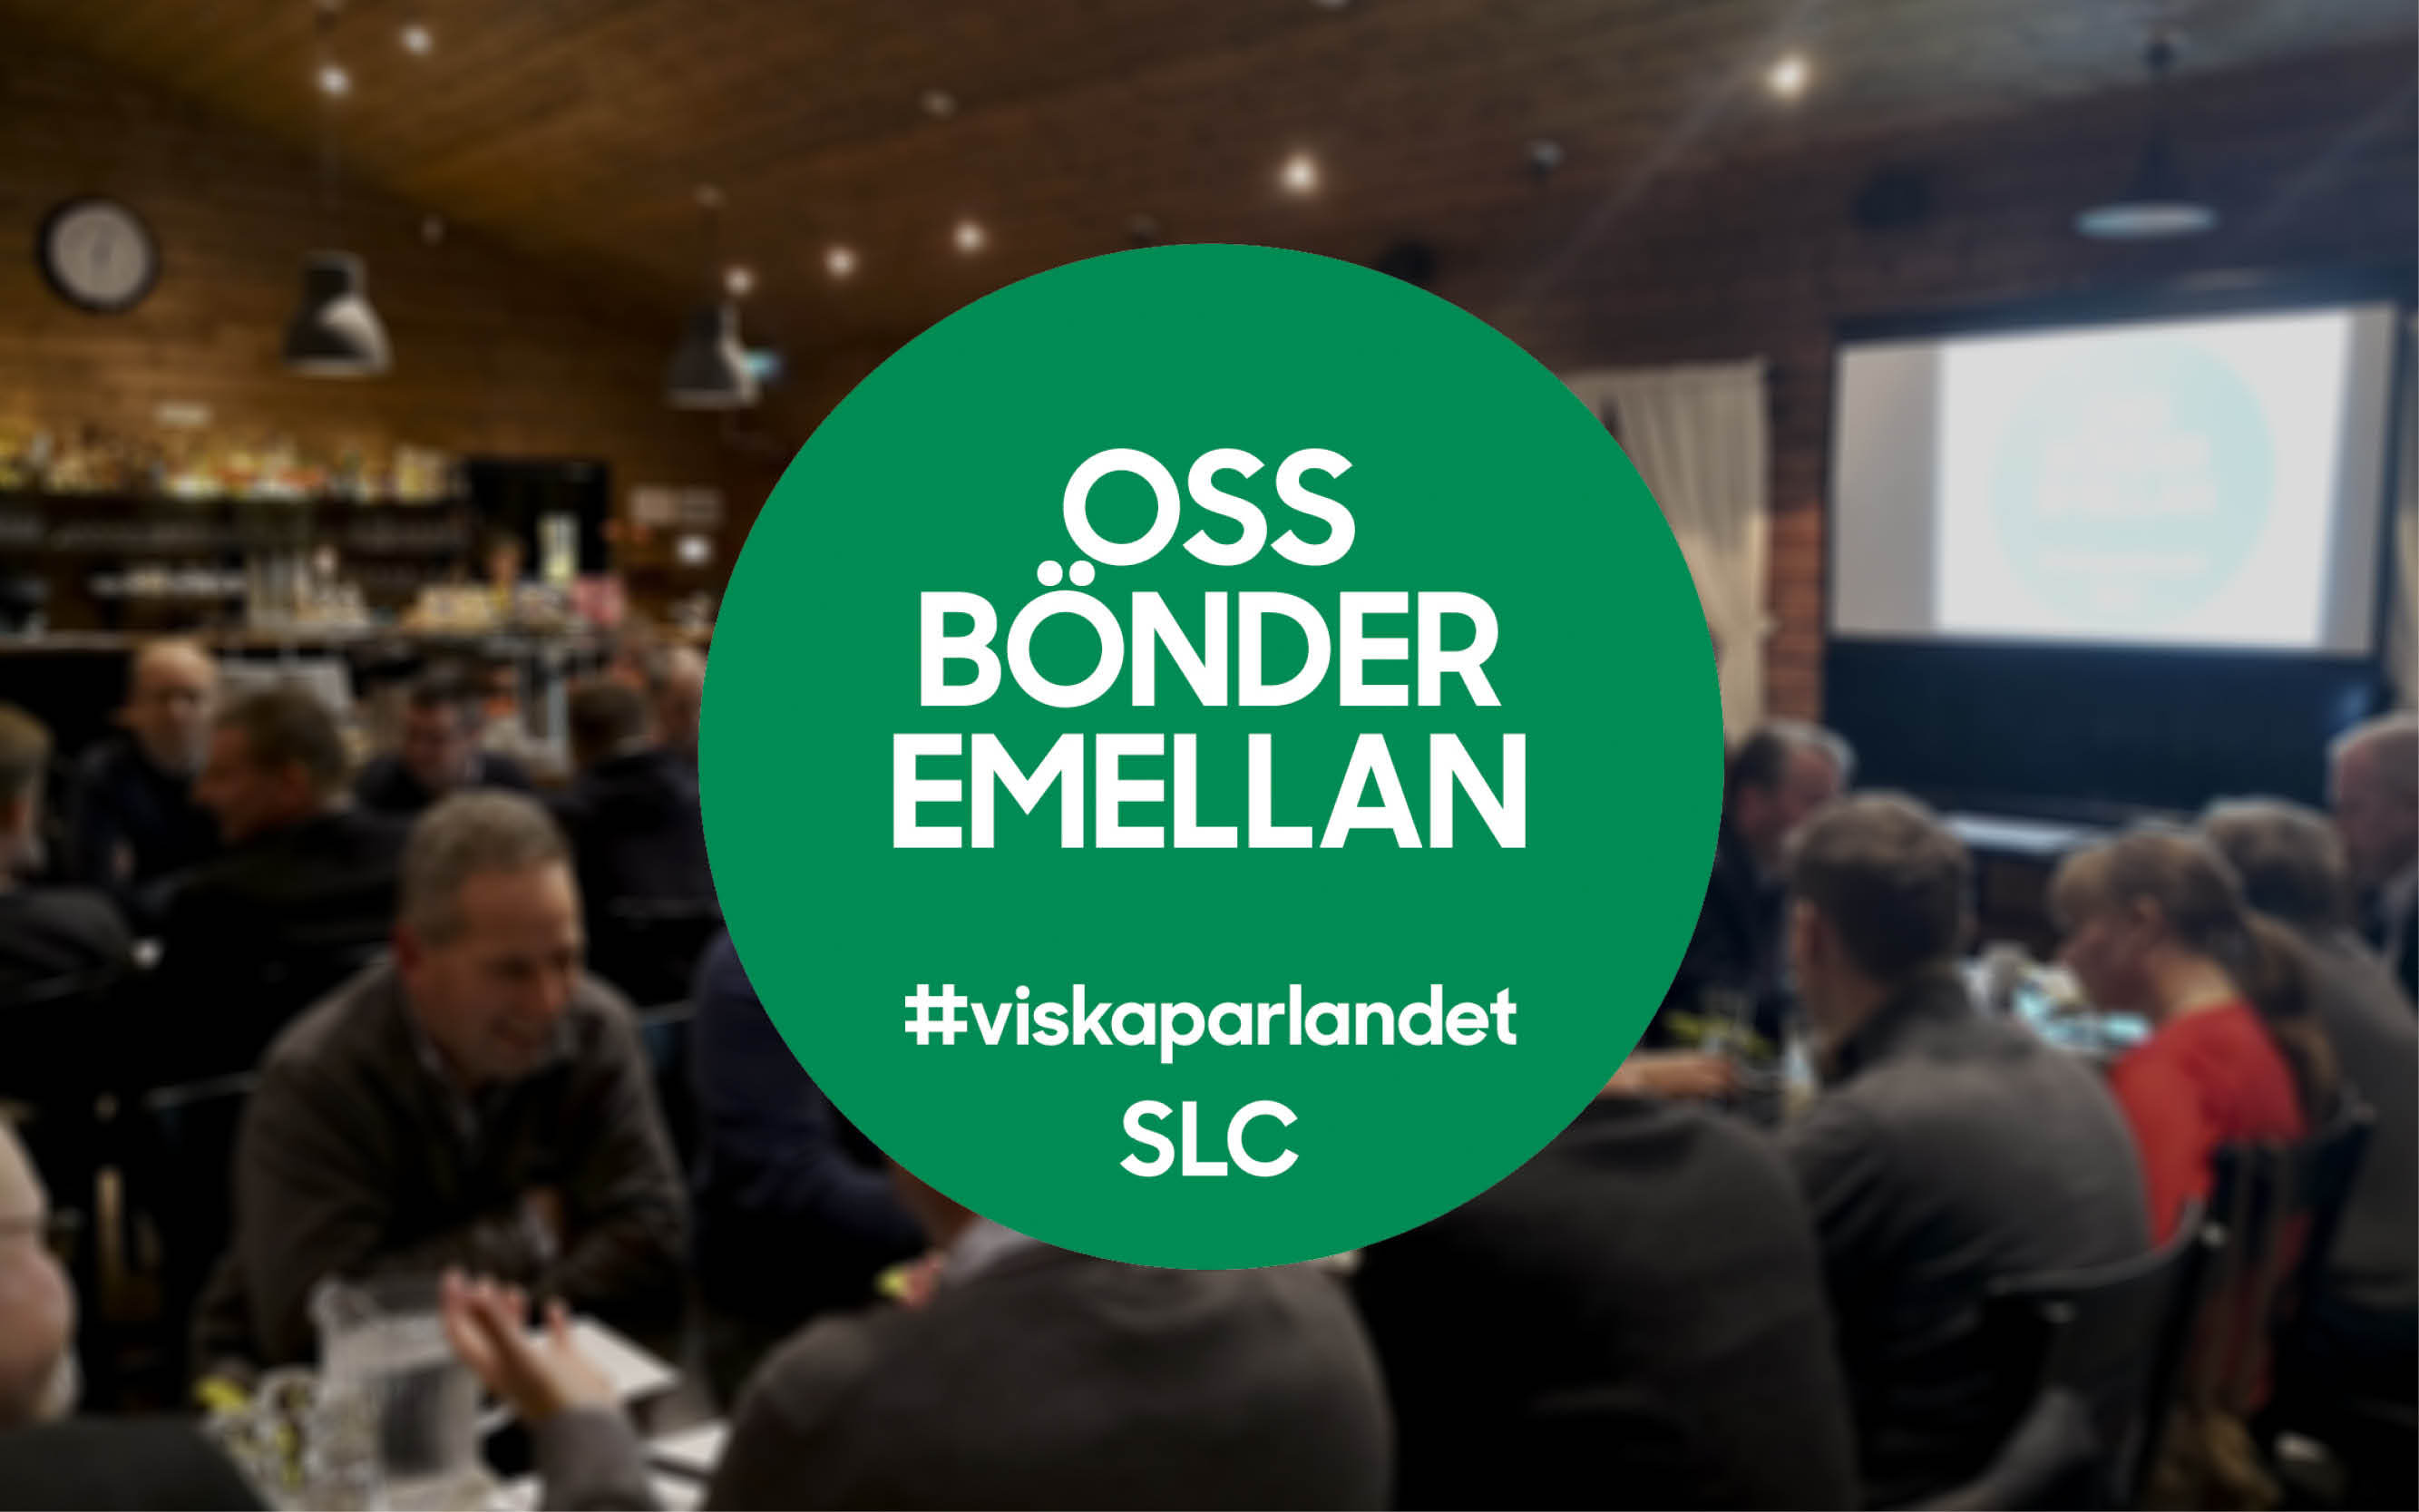 SLC - Oss bonder emellan Nyland webb med logo